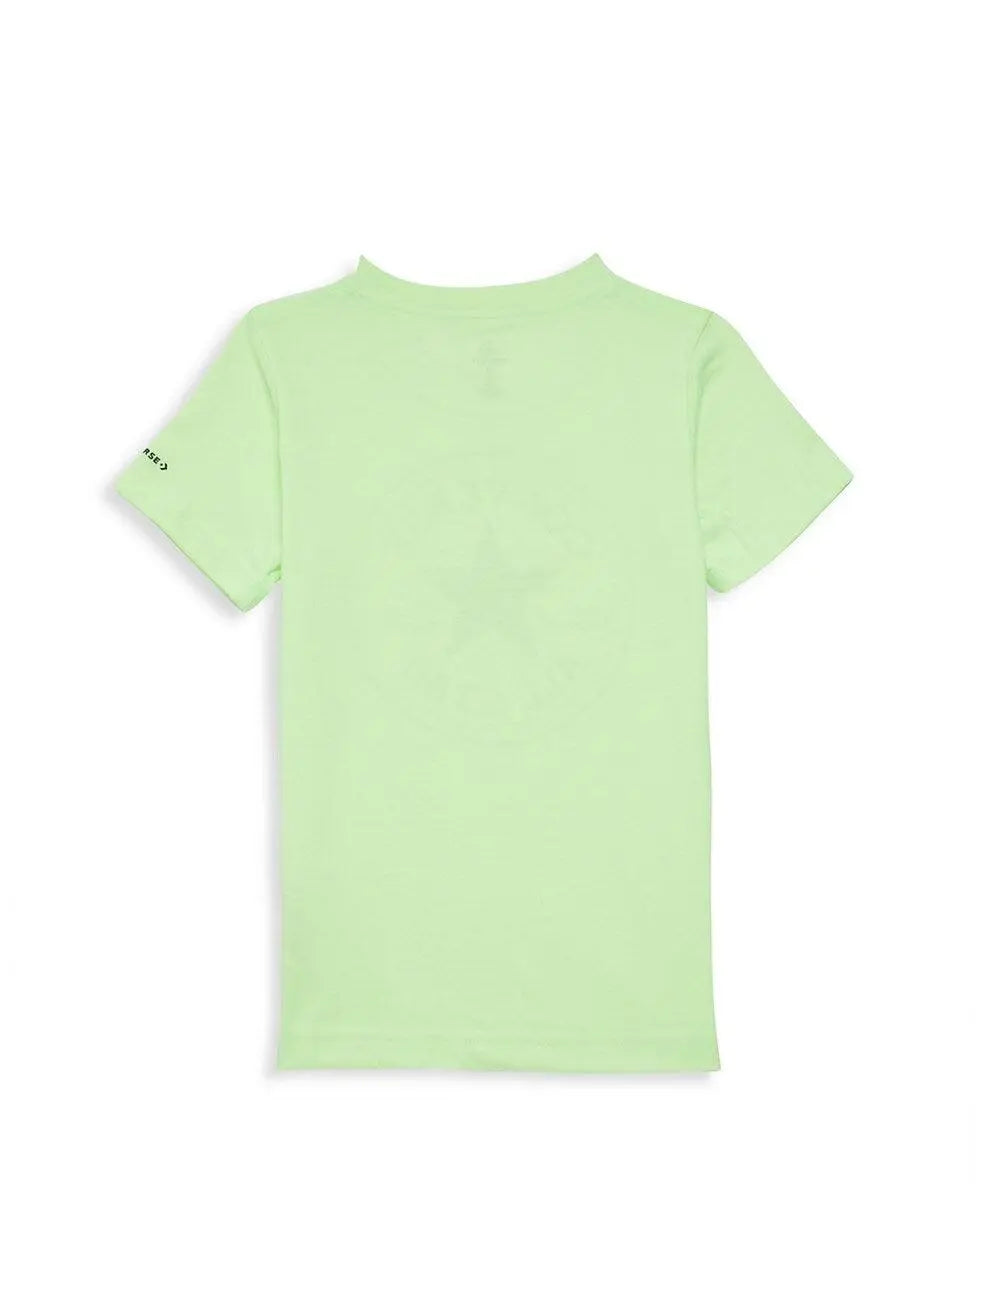 Little Boy's Dinoverse Chuck Patch T-Shirt | Converse - Jenni Kidz